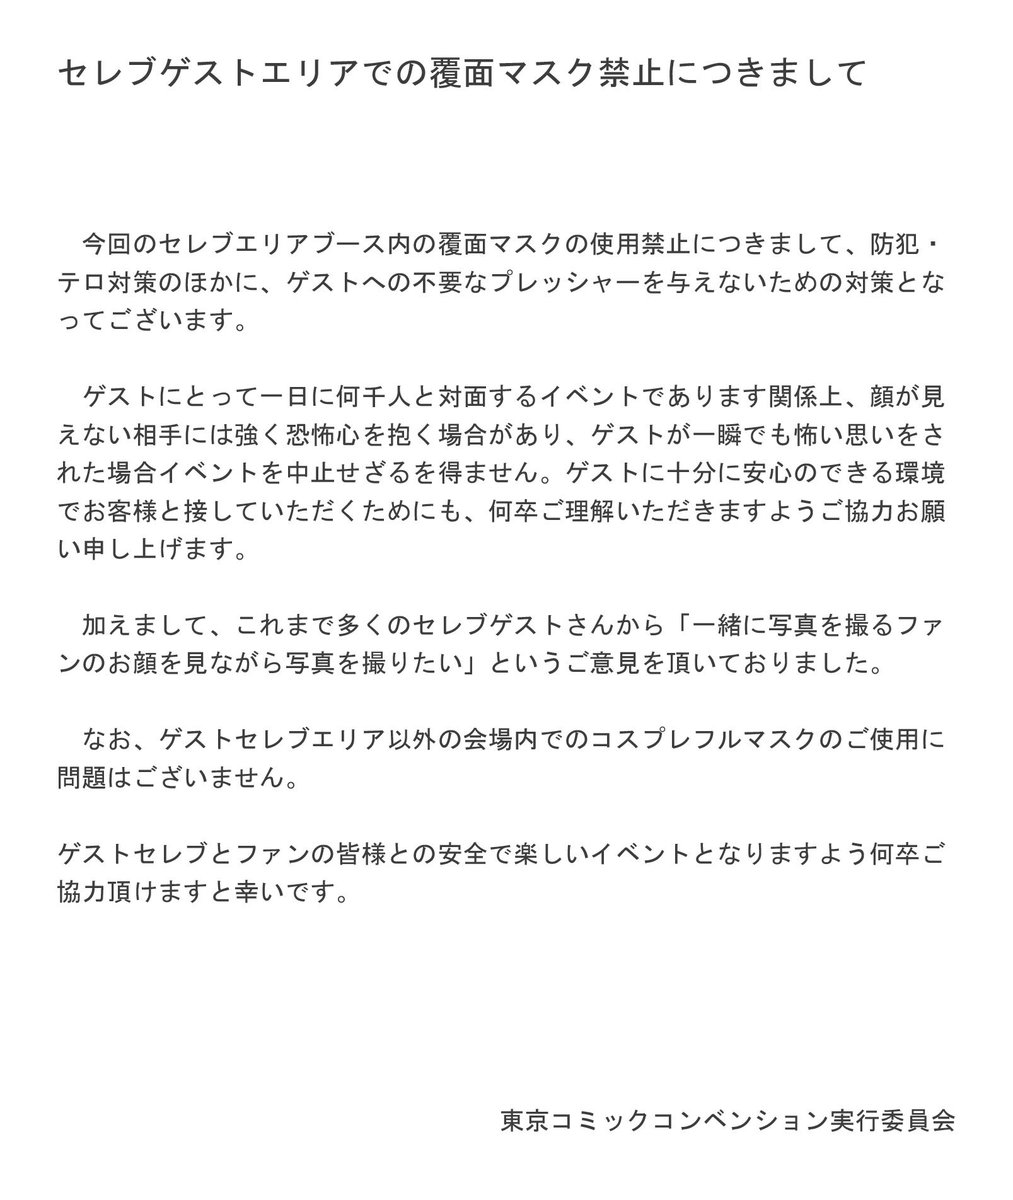 Tokyocomiccon 東京コミコン 東京コミコンホームページ セレブゲスト撮影ブース内での注意事項 を更新致しました 撮影チケットをお持ちのお客様はぜひ一度ご確認ください T Co Iydb6pz8sh 東京コミコン Tokyocomiccon T Co